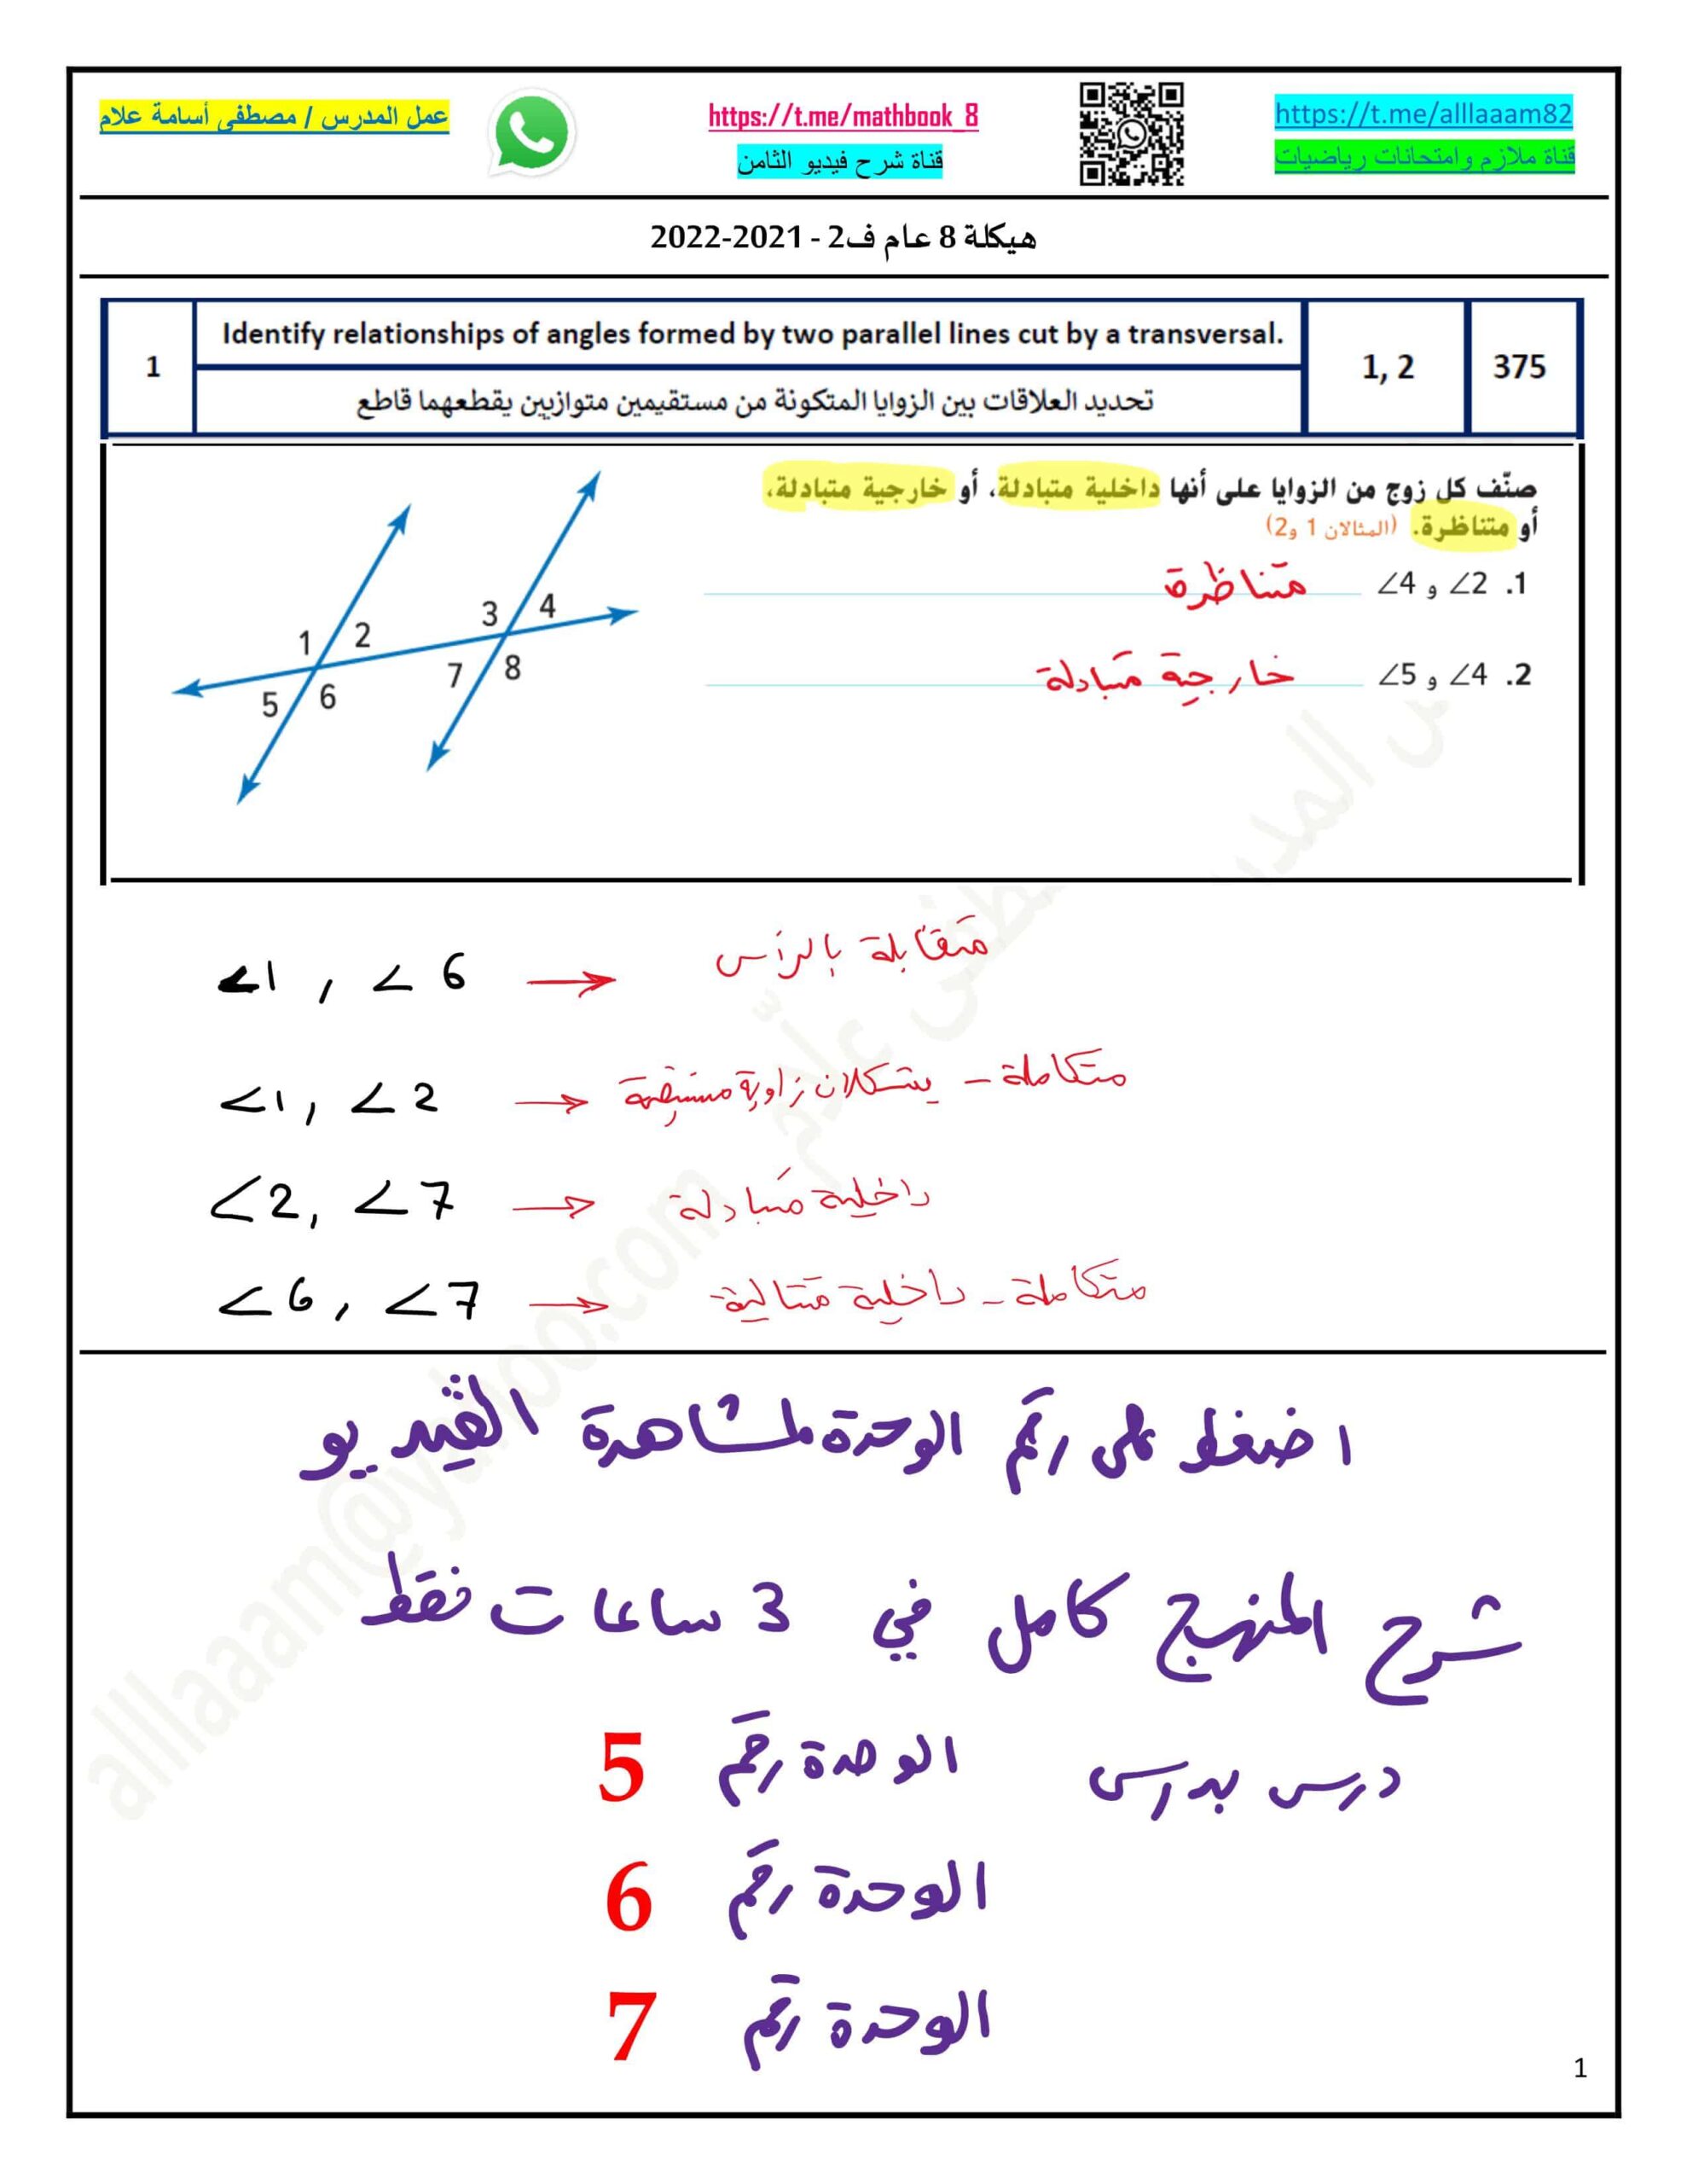 أوراق عمل هيكلة الامتحان الرياضيات المتكاملة الصف الثامن